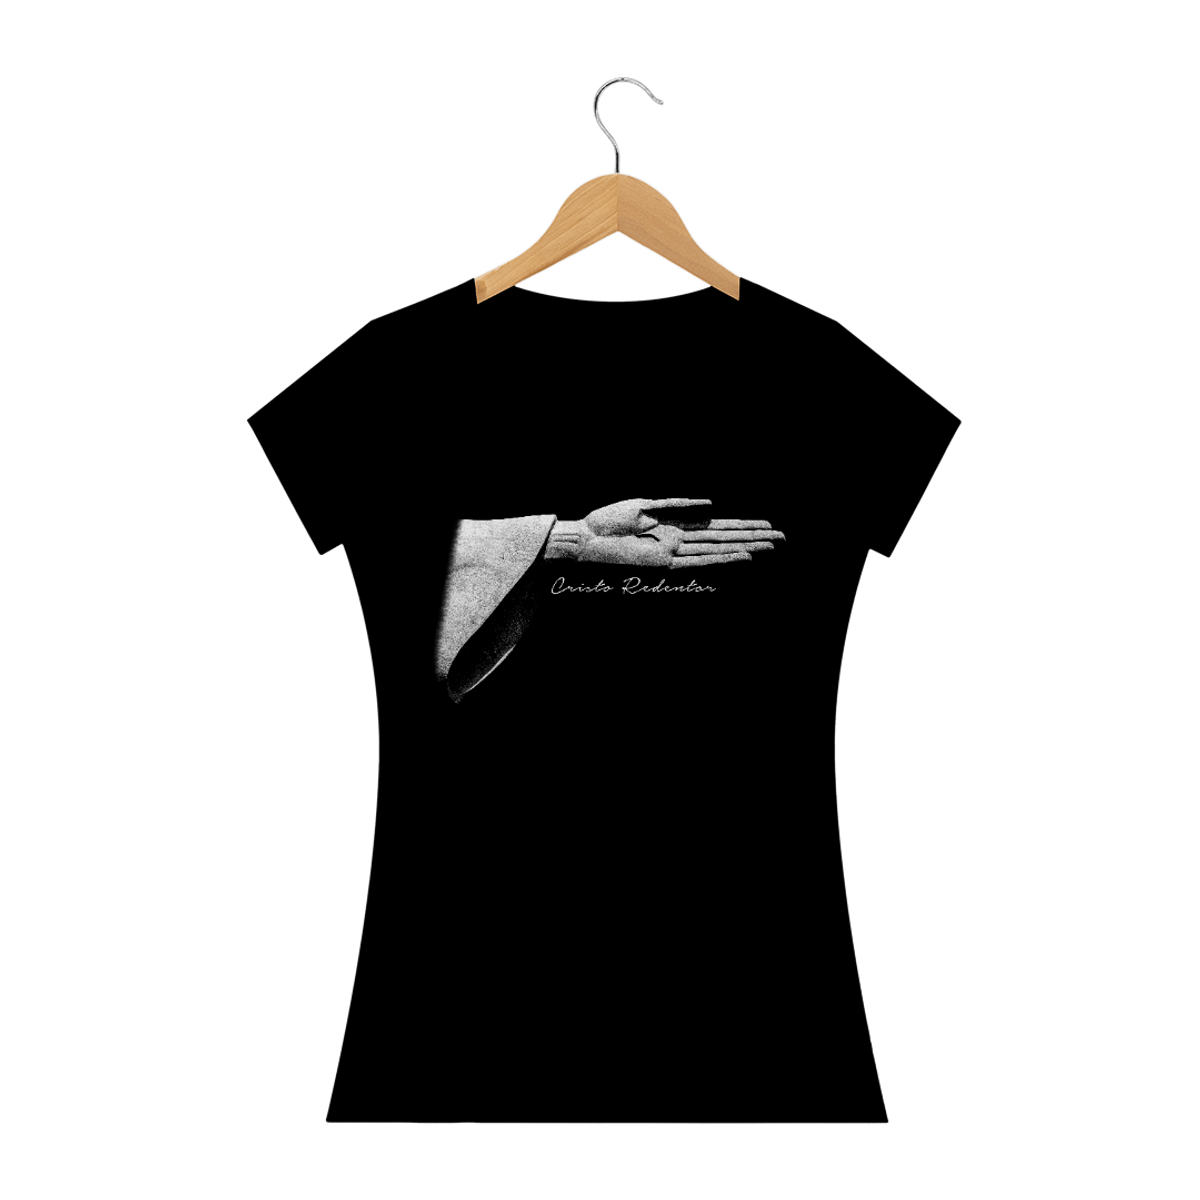 Nome do produto: Camiseta Feminina Cristo Redentor braço